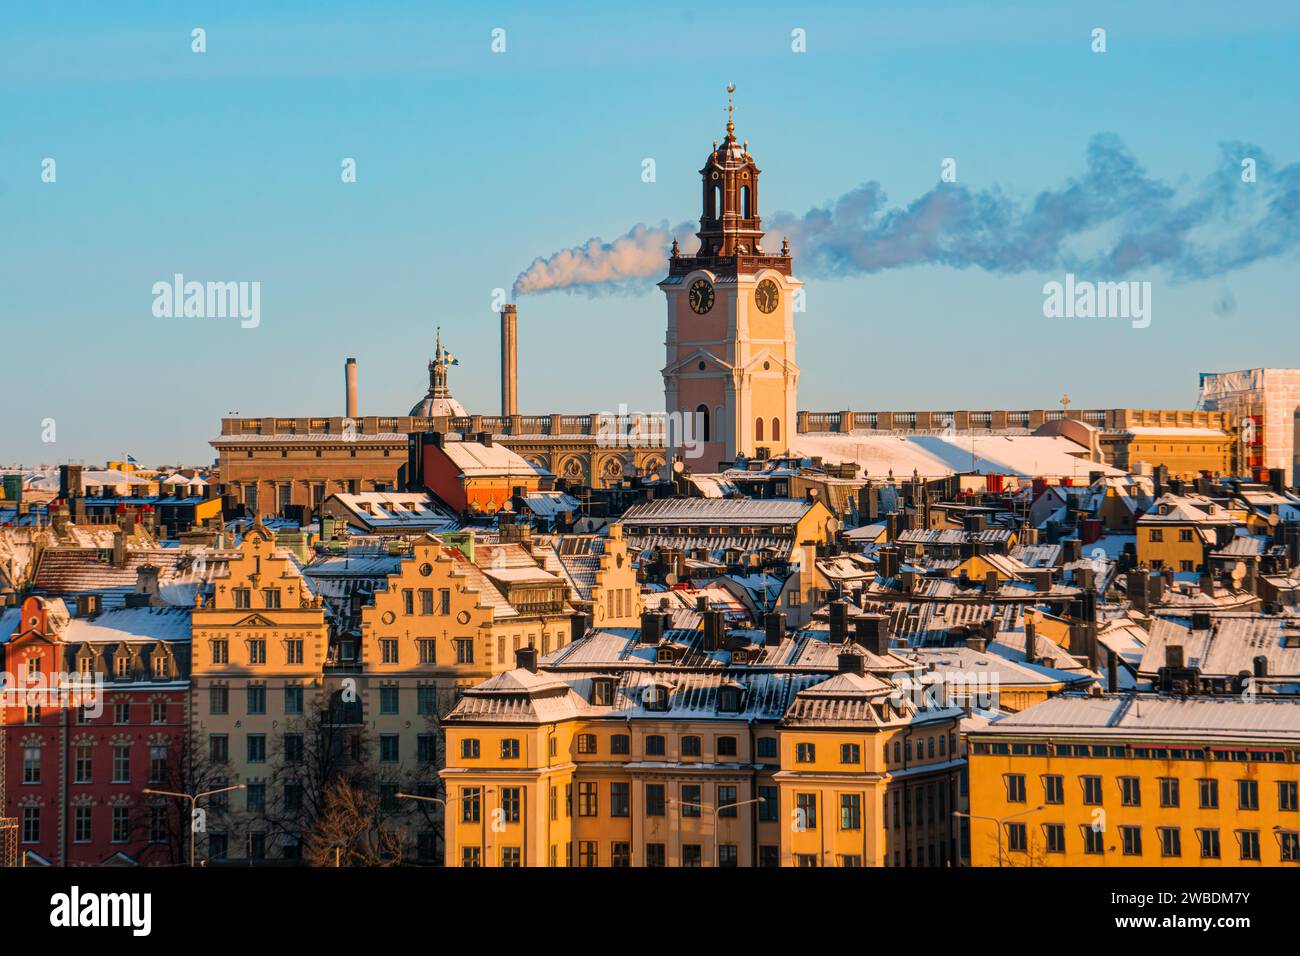 La chiesa tedesca nella città vecchia di Stoccolma, in Svezia, in una fredda giornata invernale. Tetto del palazzo reale sullo sfondo e tetti di Gamla Stan. Foto Stock